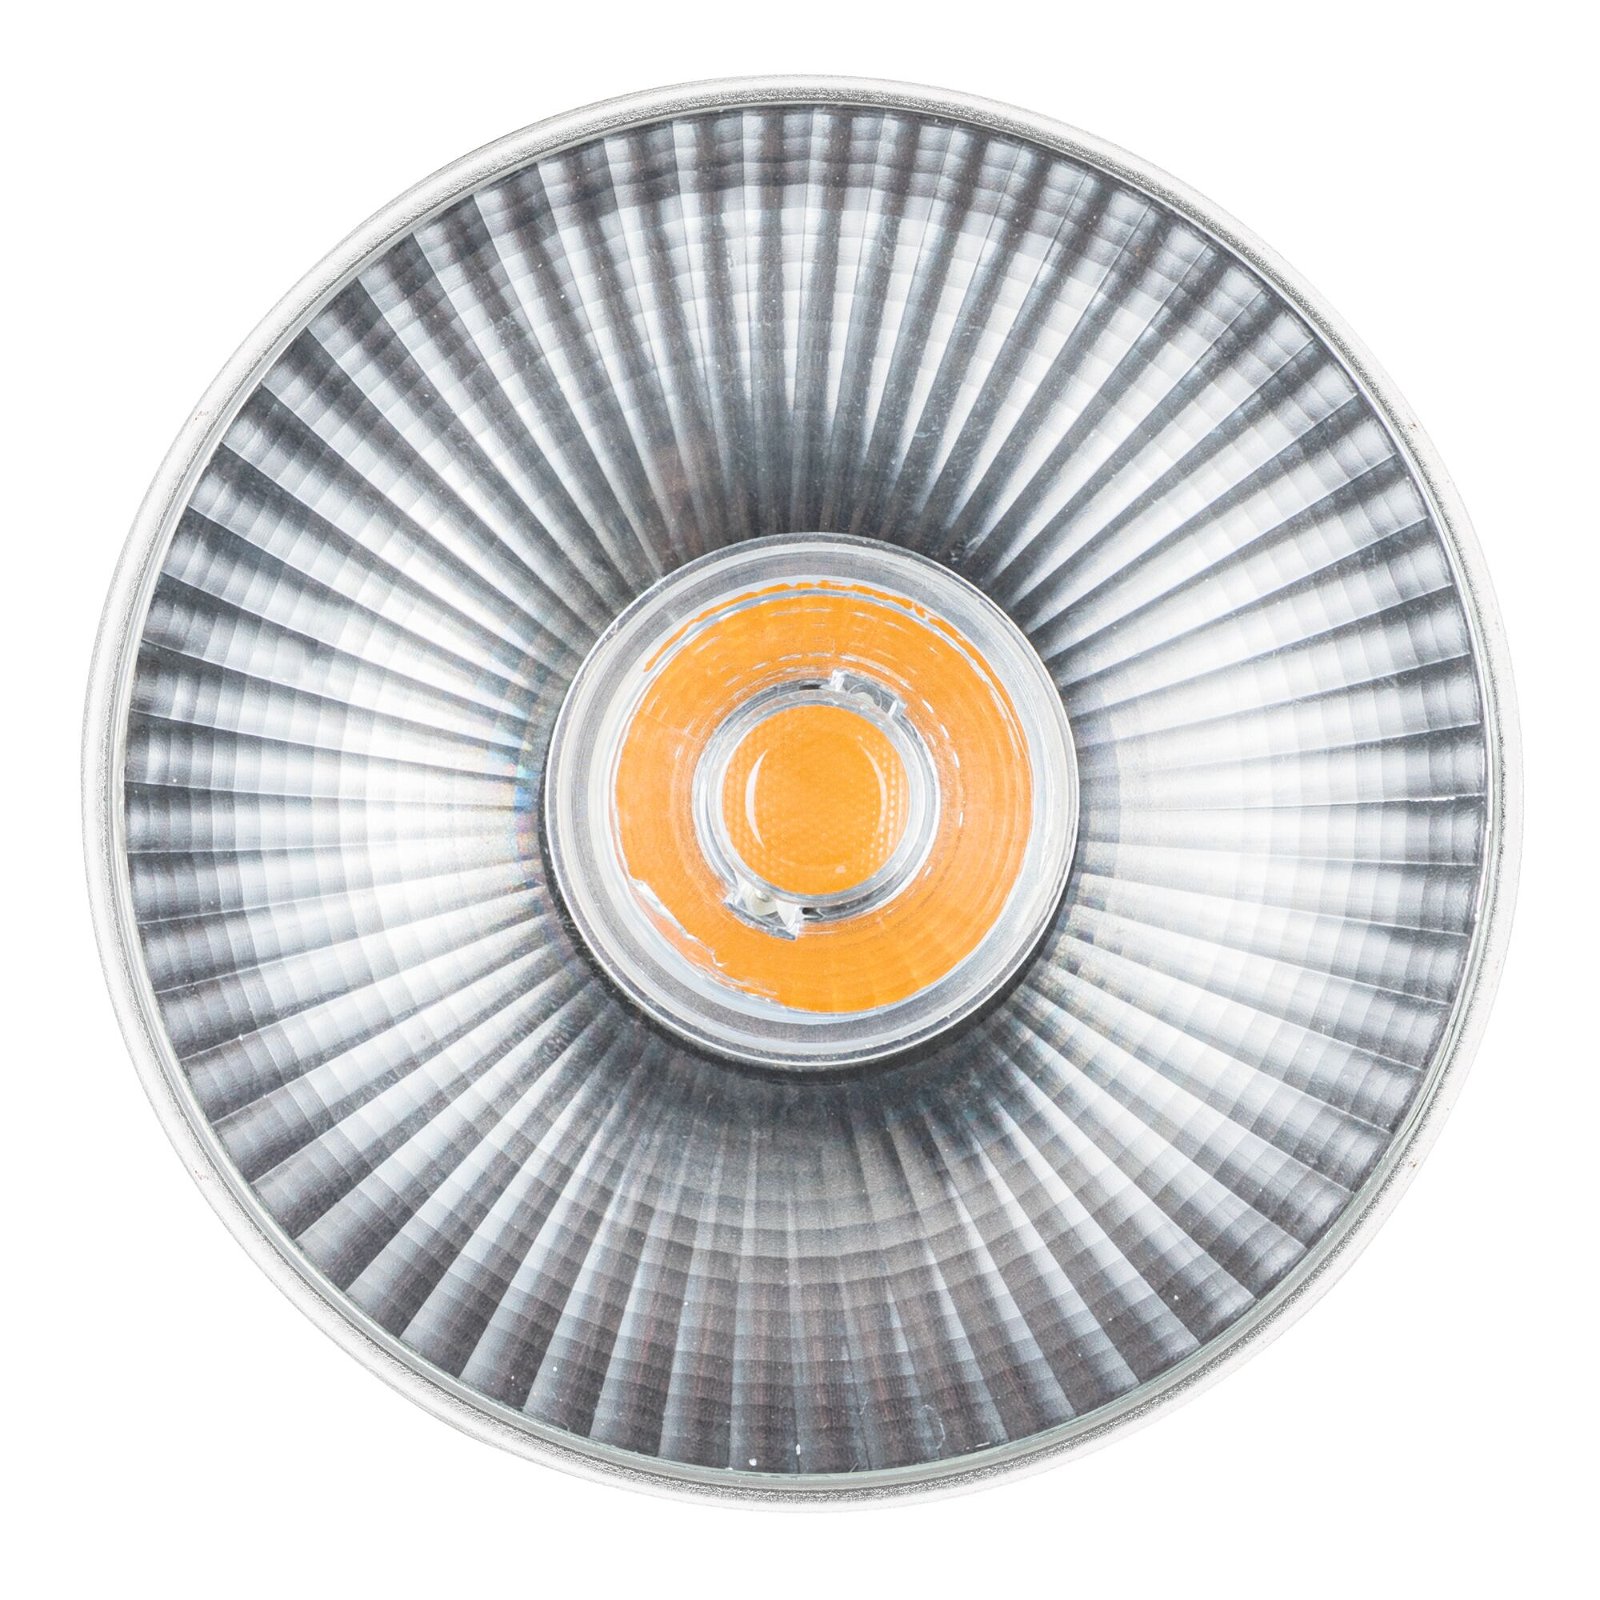 Standaard 230 V LED-reflector QPAR111 GU10 350lm 4W 2700K Alu